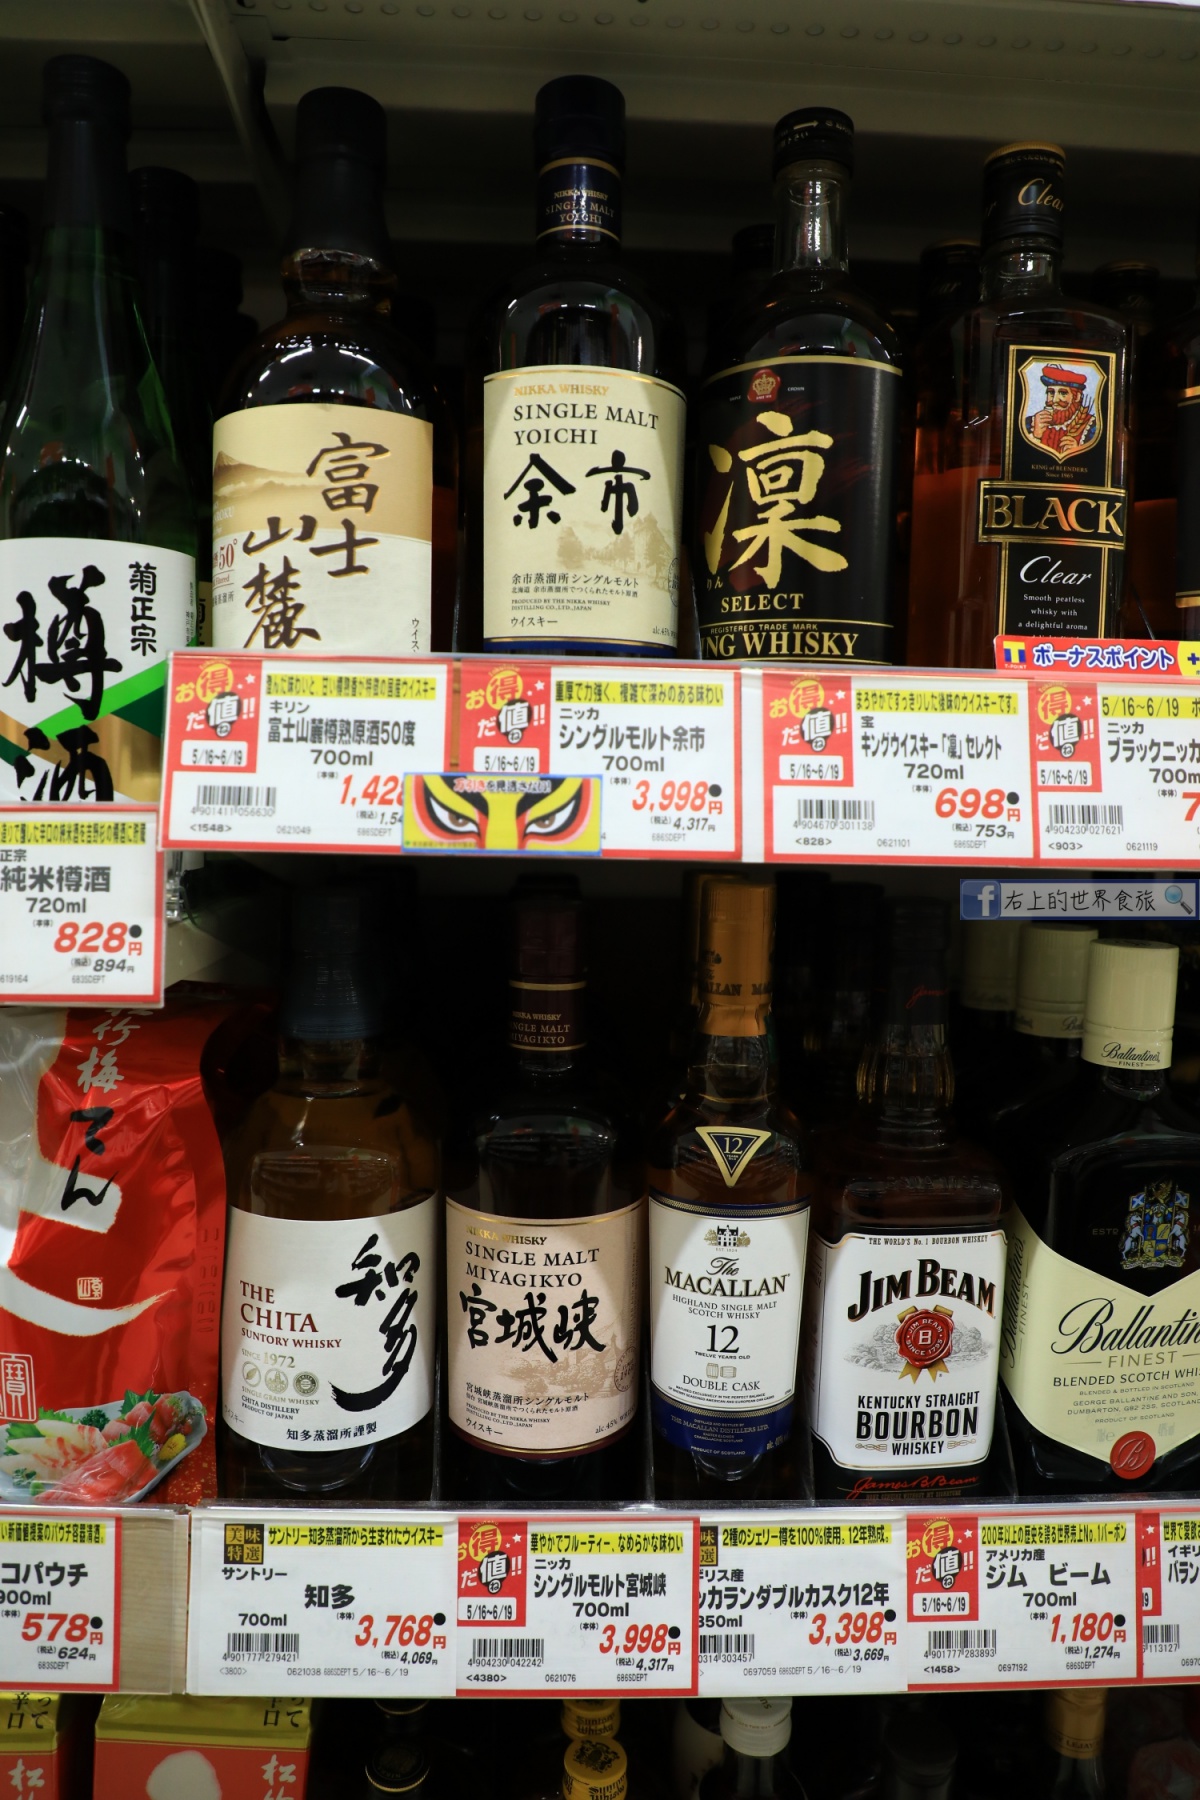 2019日本超市必買推薦-零食、泡麵、調味料、日用品攻略 @右上世界食旅